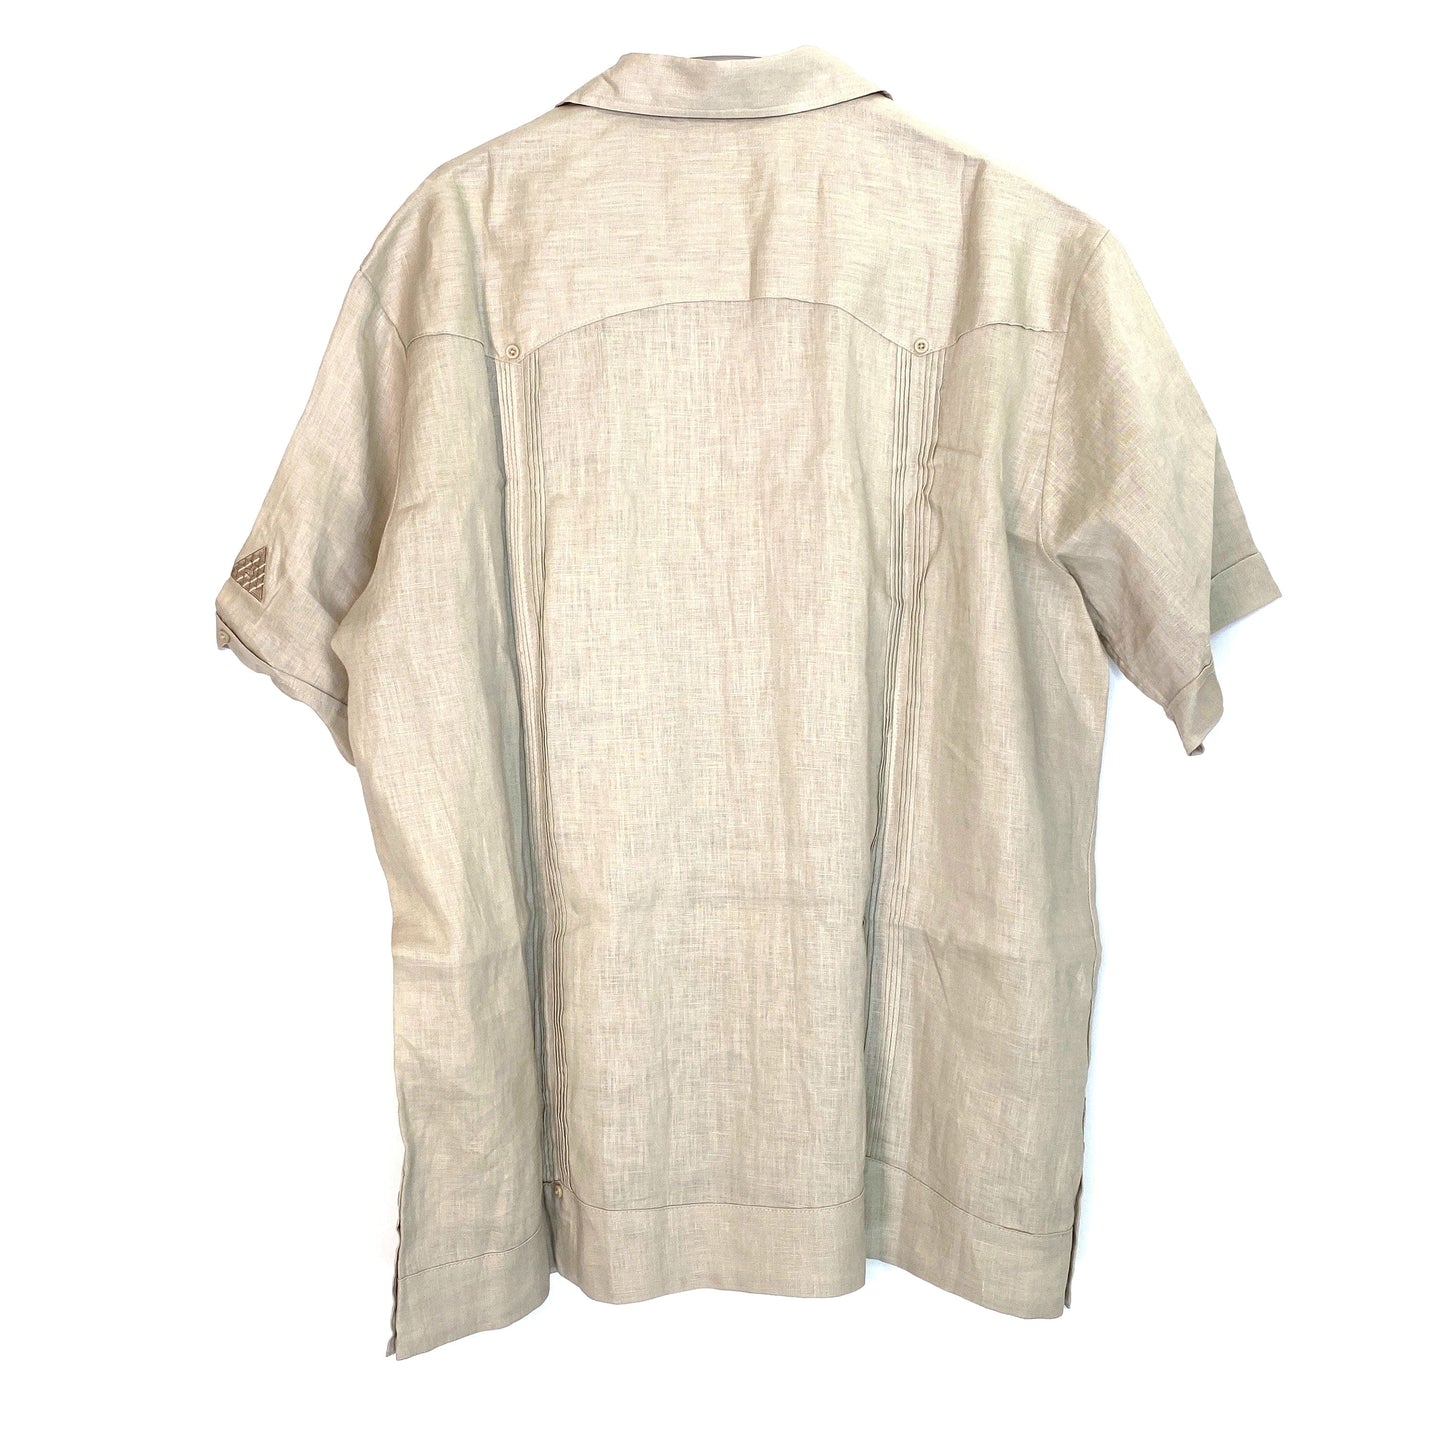 Cubavera Mens Size XL Beige Linen Shirt Button-Up S/s